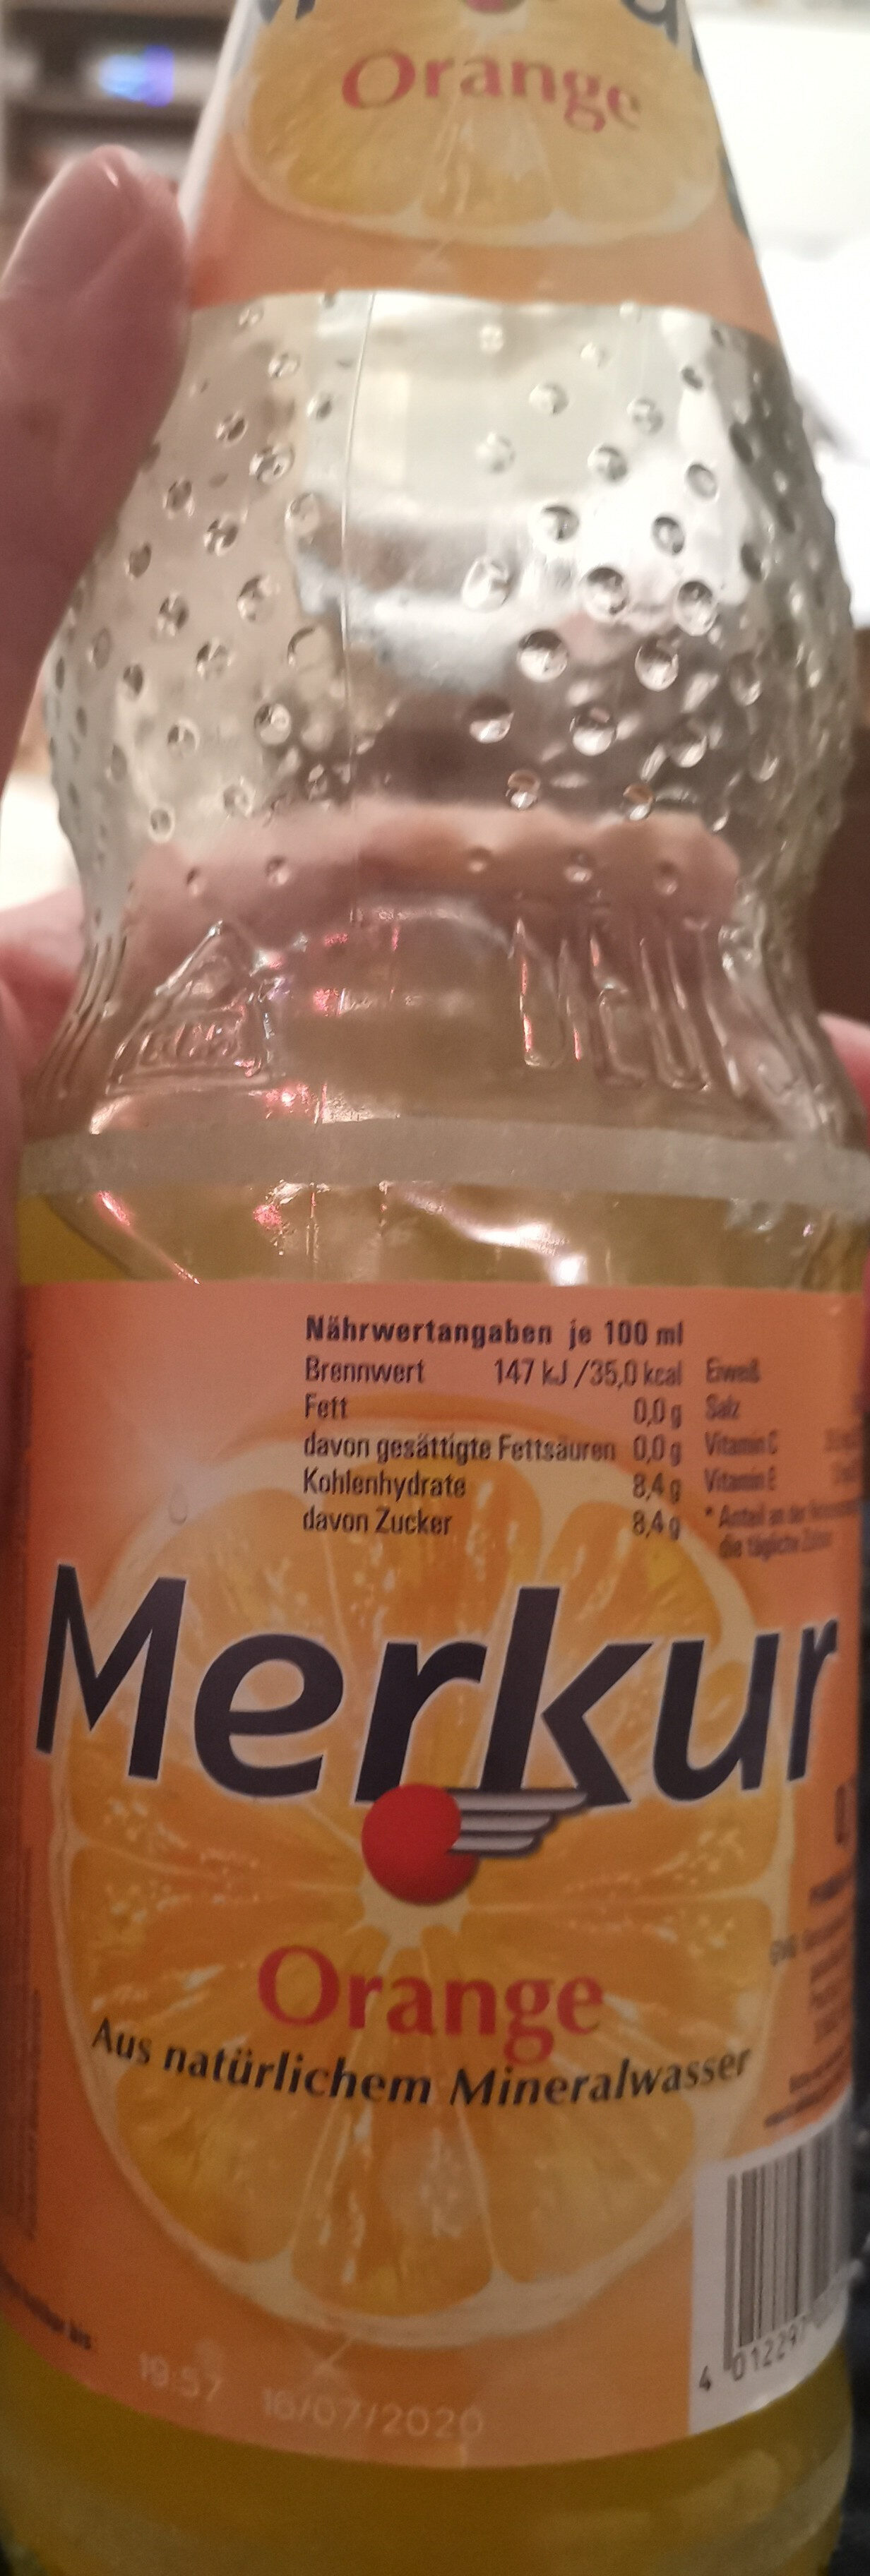 Merkur Orange - Product - de